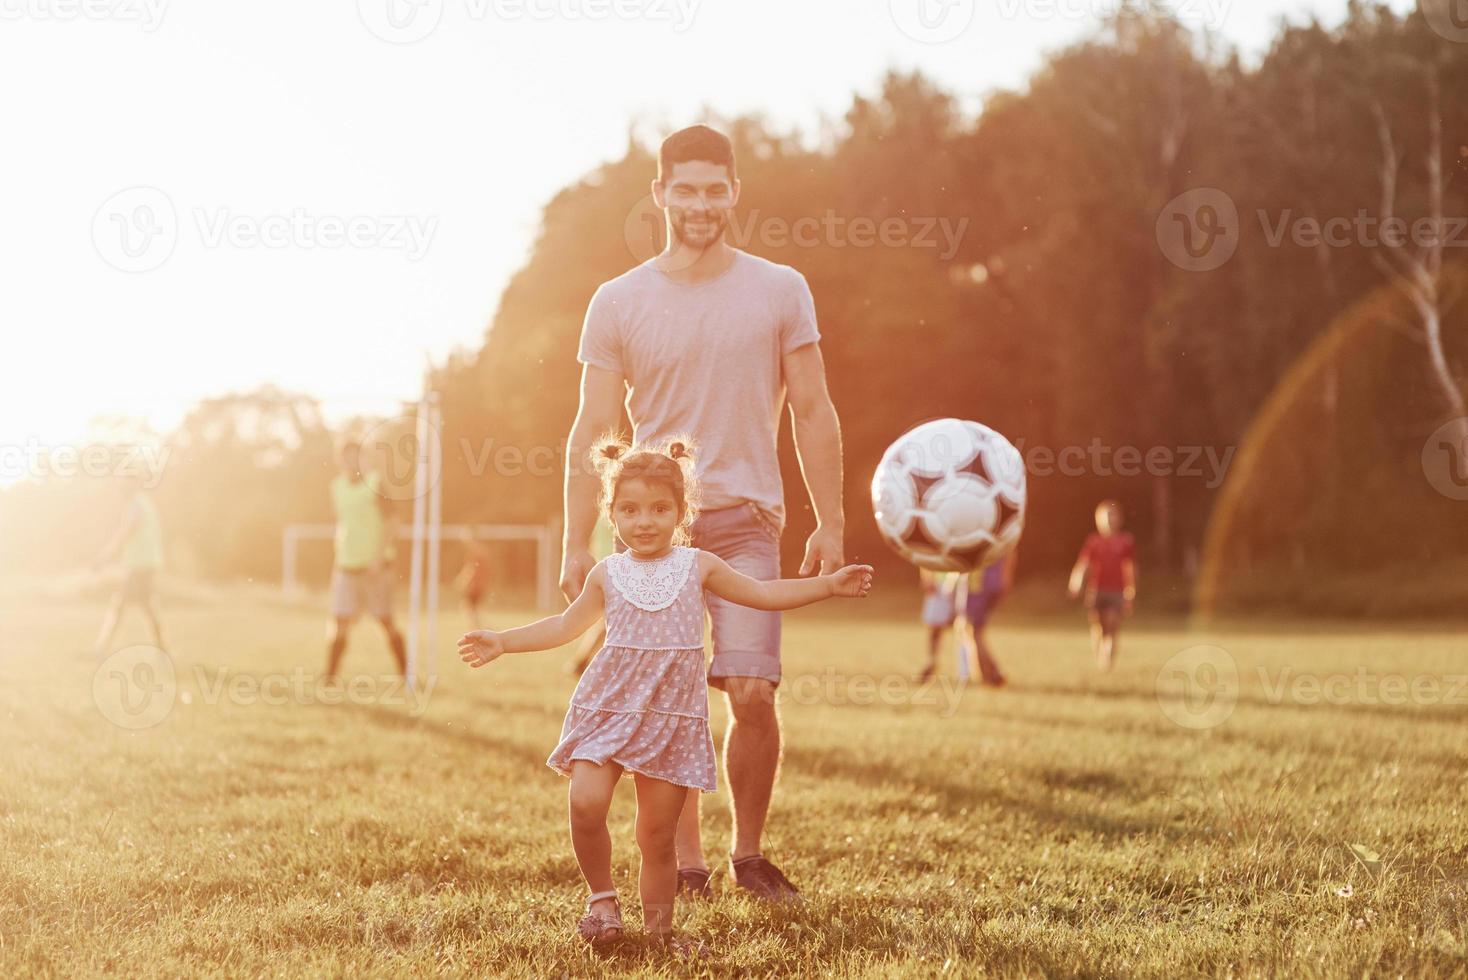 Podemos trapacear às vezes. as mãos são bem-vindas. pai entusiasmado ensina  a filha como jogar seu jogo favorito. é futebol e até as meninas podem jogar.